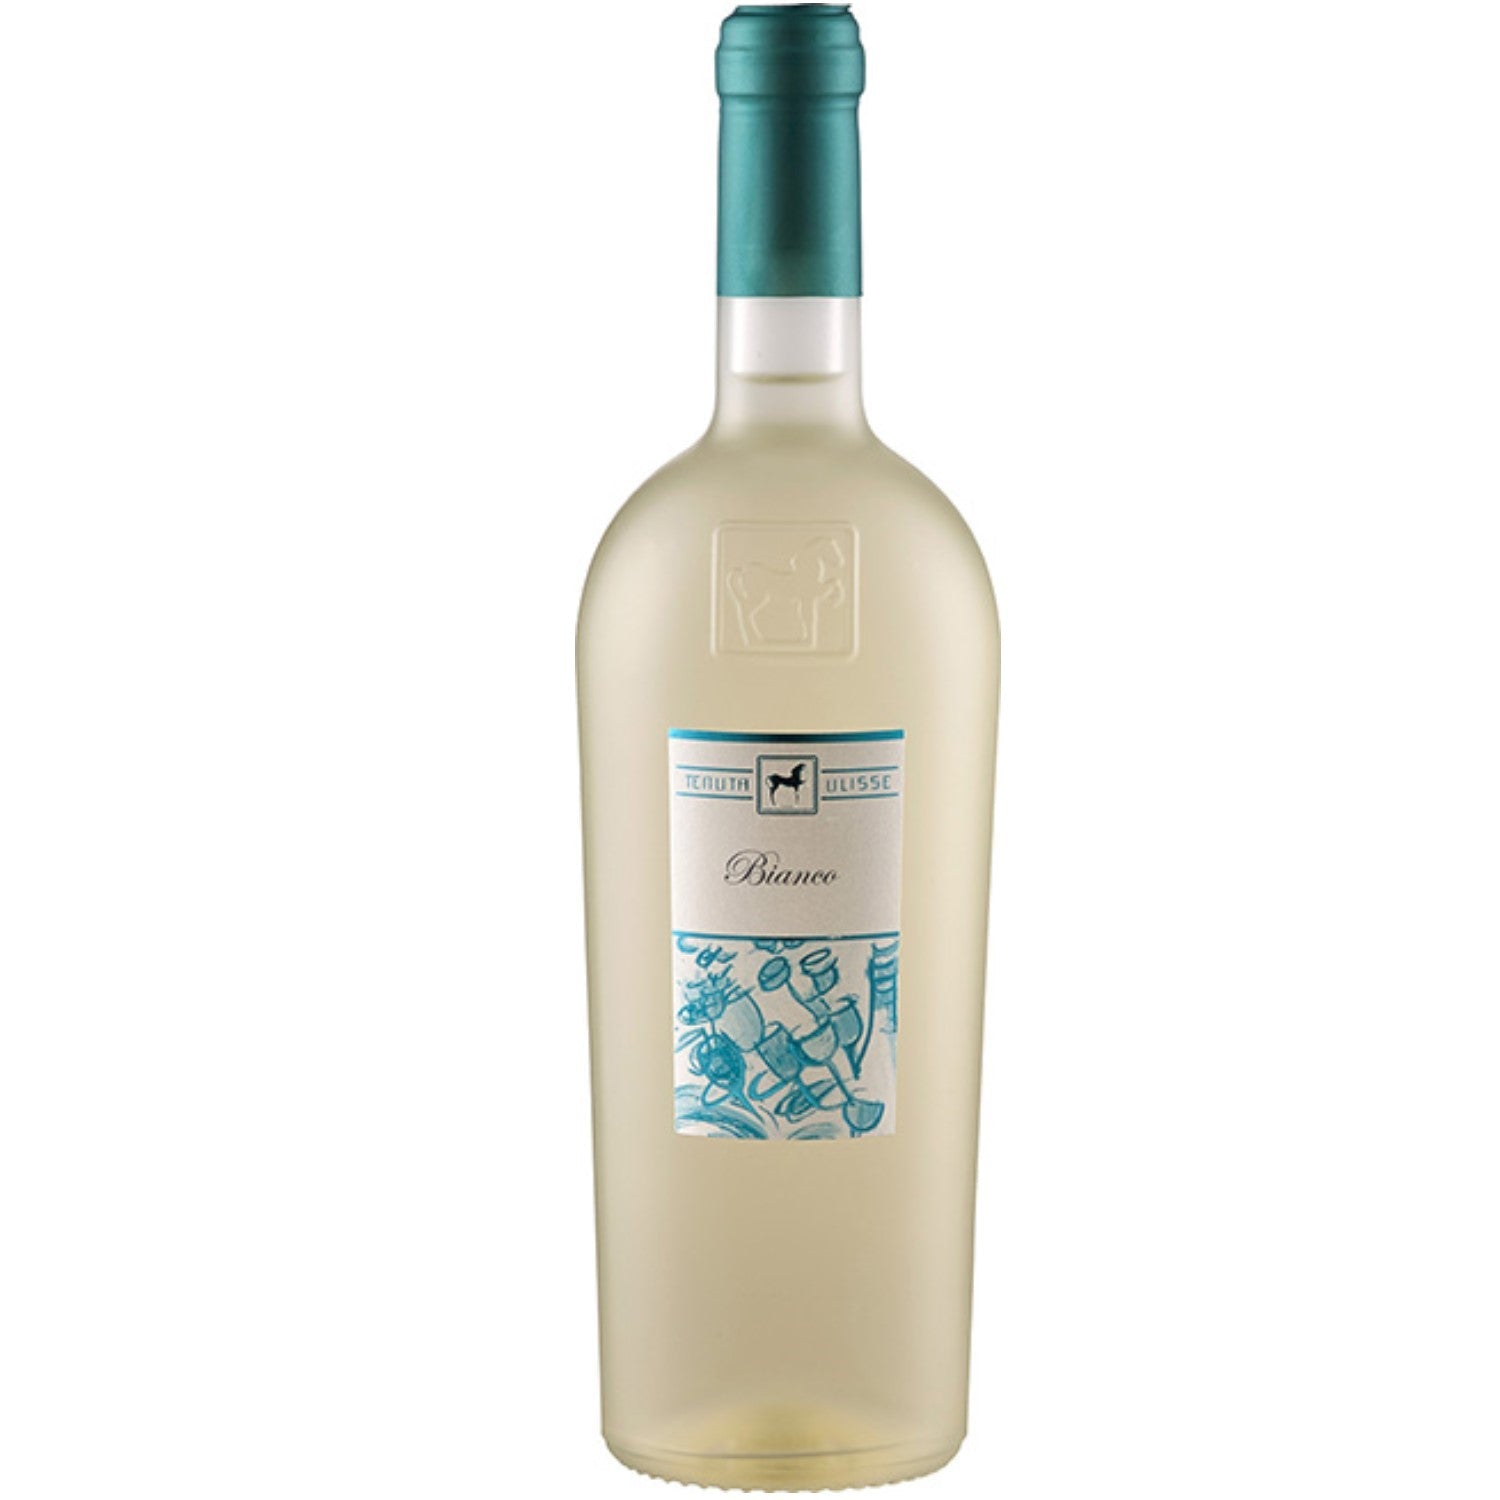 Tenuta Ulisse Linea Ulisse Selezione Bianco Weißwein Wein Trocken Italien (3 x 0.75l) - Versanel -